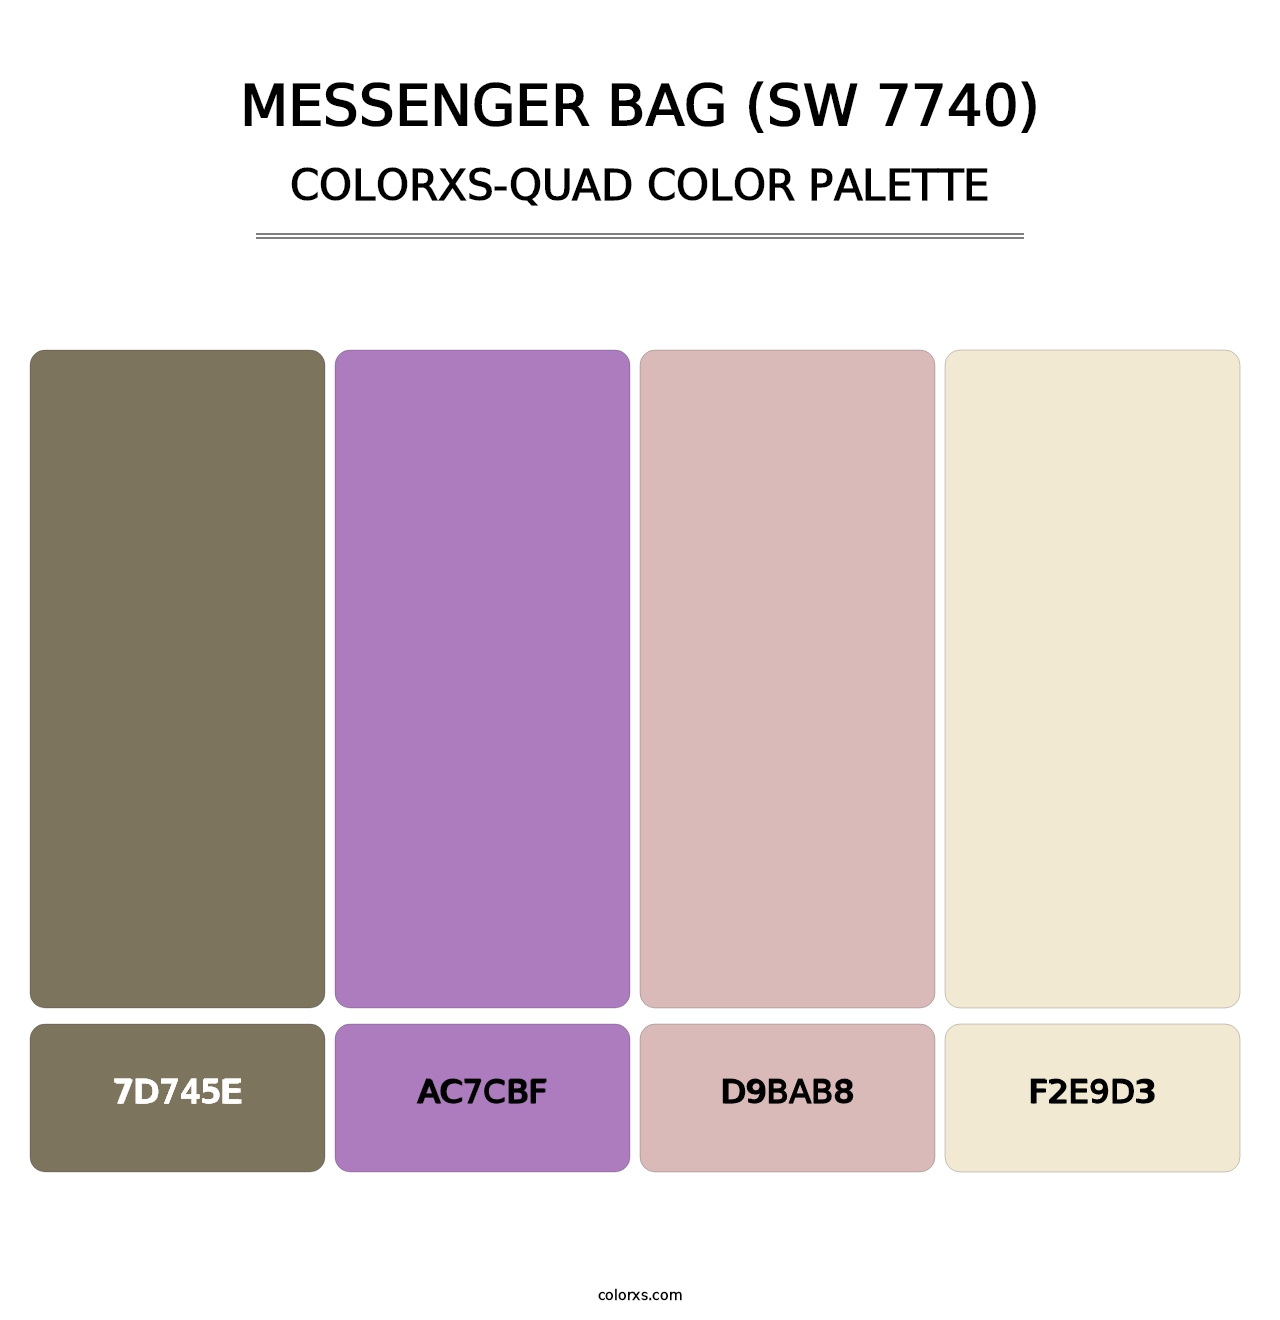 Messenger Bag (SW 7740) - Colorxs Quad Palette